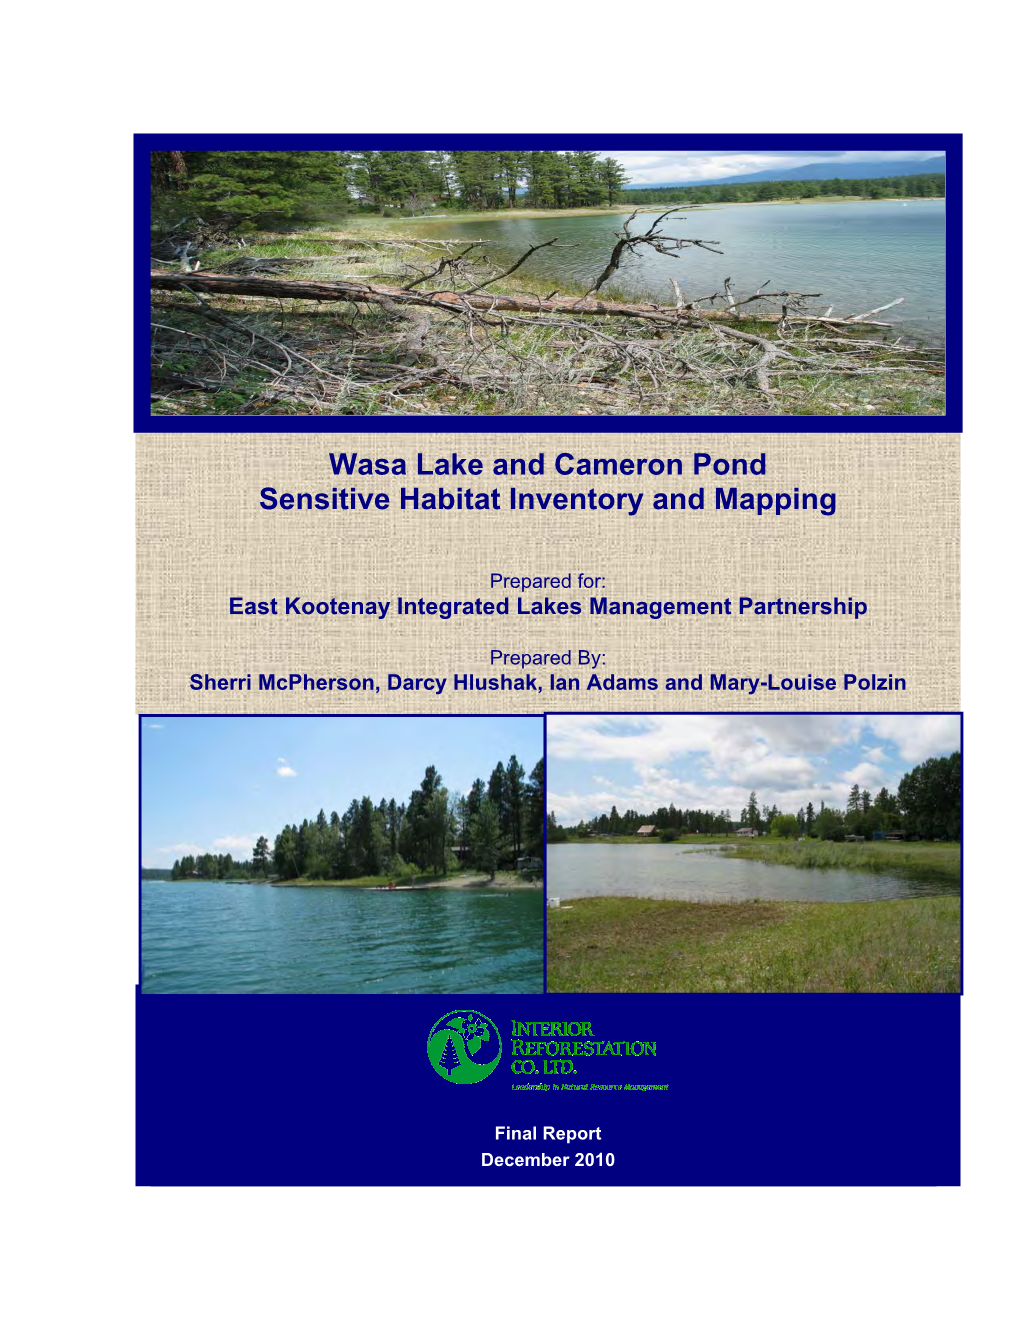 Wasa Lake Sensitive Habitat Inventory and Mapping